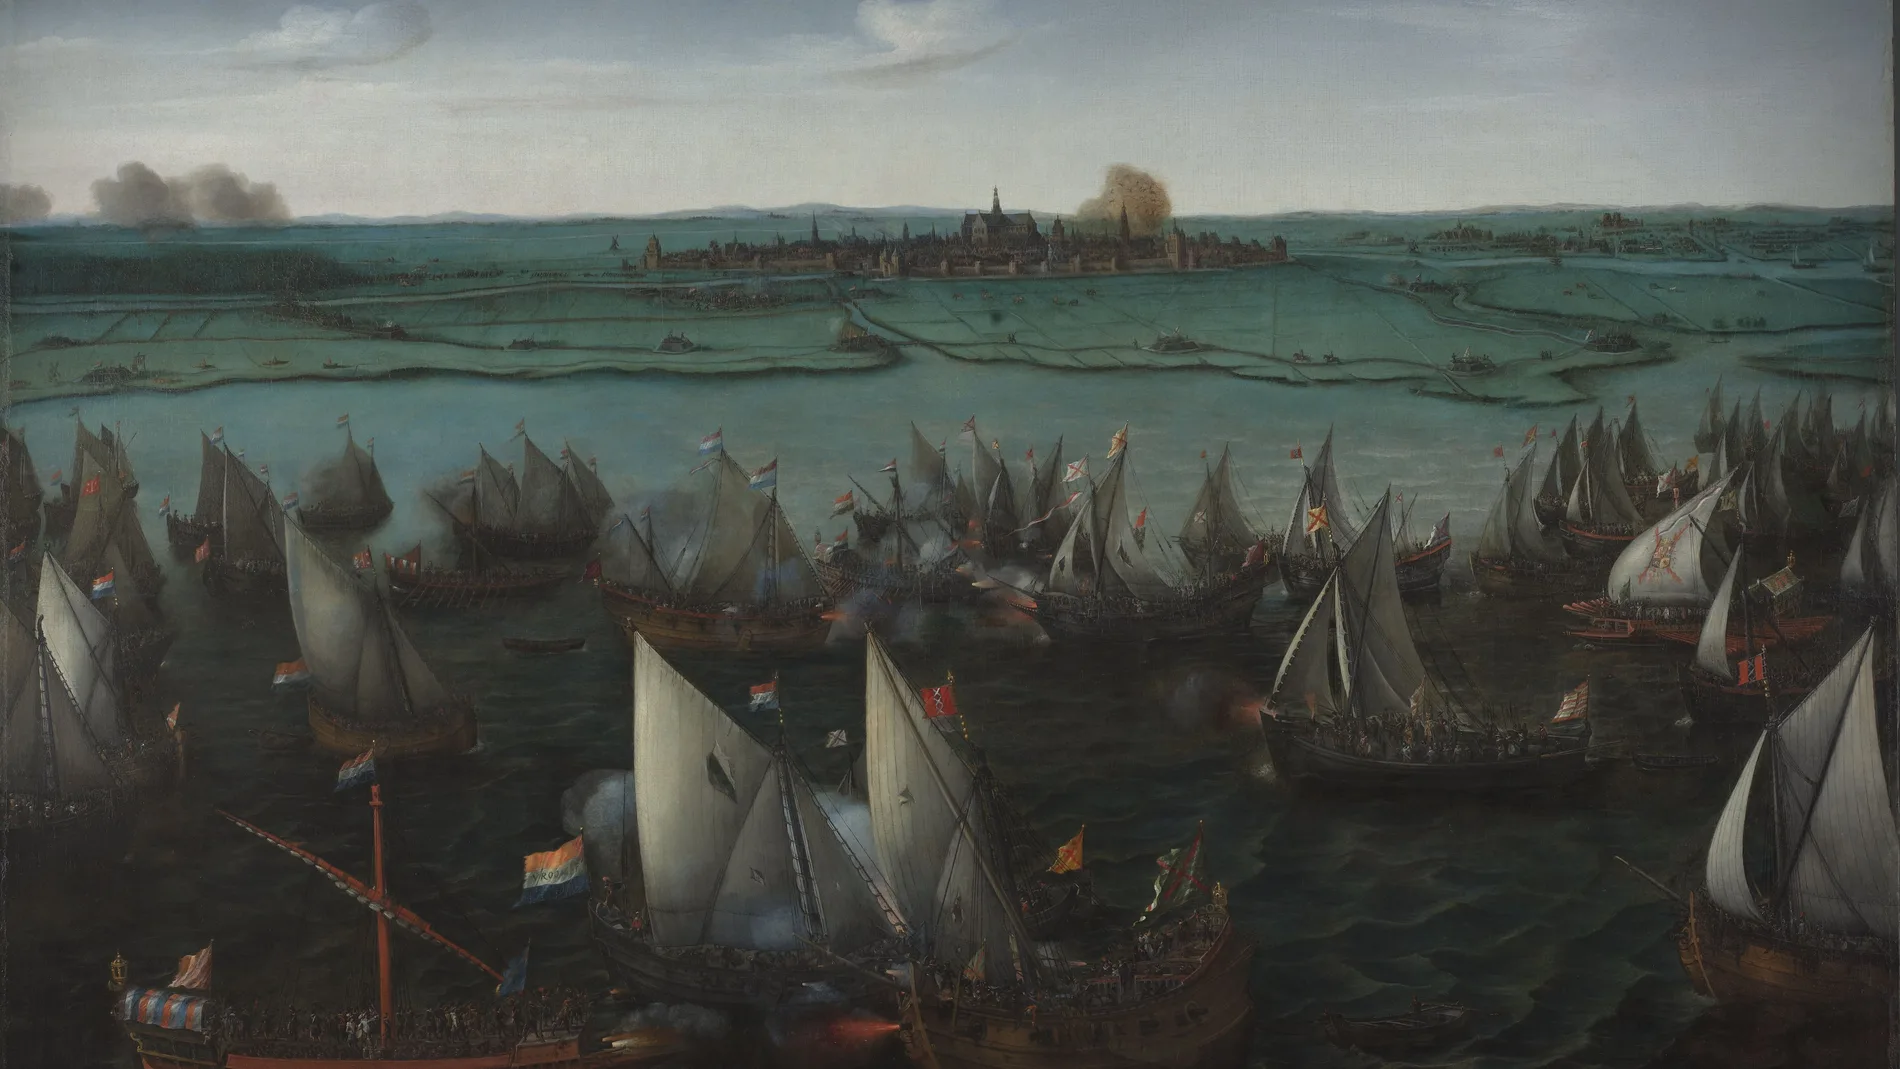 Óleo sobre lienzo de H. Cornelisz Vroom (ca. 1629) que muestra la batalla naval entre las armadas realista y rebelde en el Haarlemmermeer y el asedio a la ciudad de Haarlem al fondo